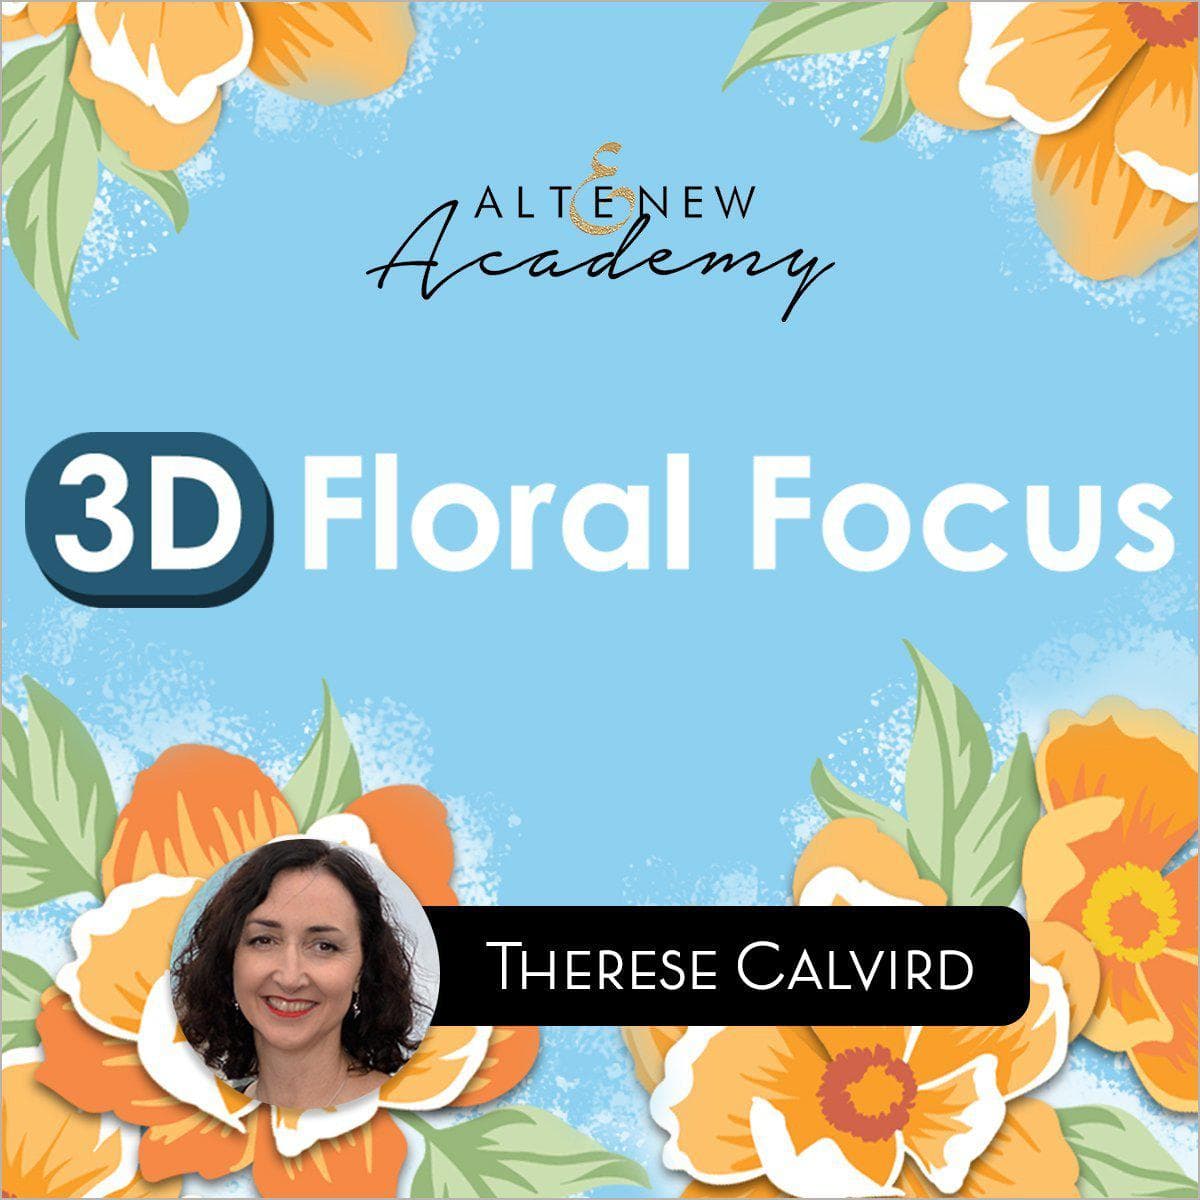 Altenew Class 3D Floral Focus Online Cardmaking Class